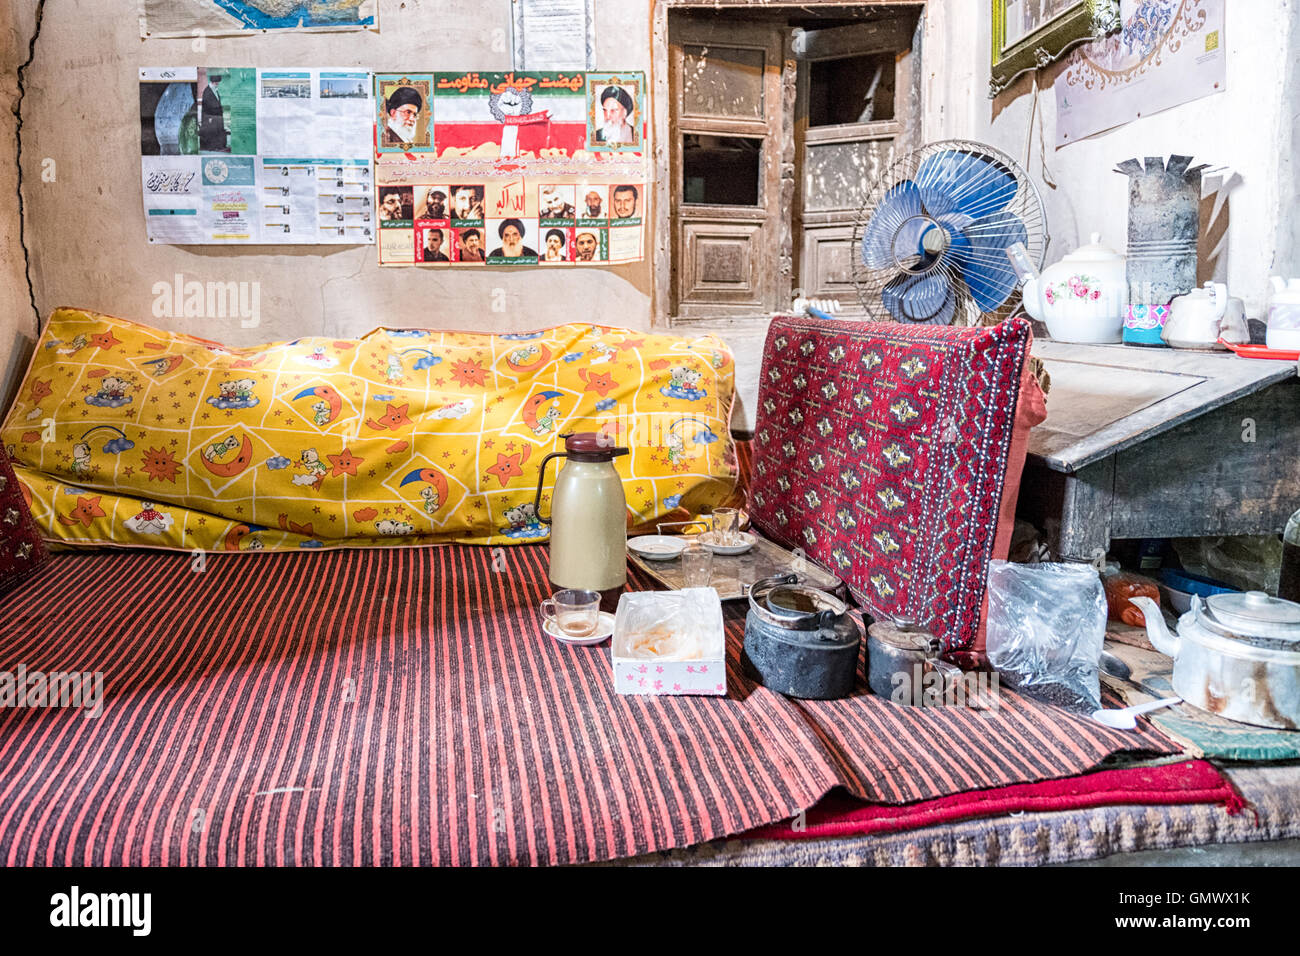 Mohammed Mehdi Mohhebi, ölverarbeitenden Shop-Betreiber Bett und Tee in seiner alten Öl-Verarbeitung-Mühle in Isfahan, Iran. Stockfoto